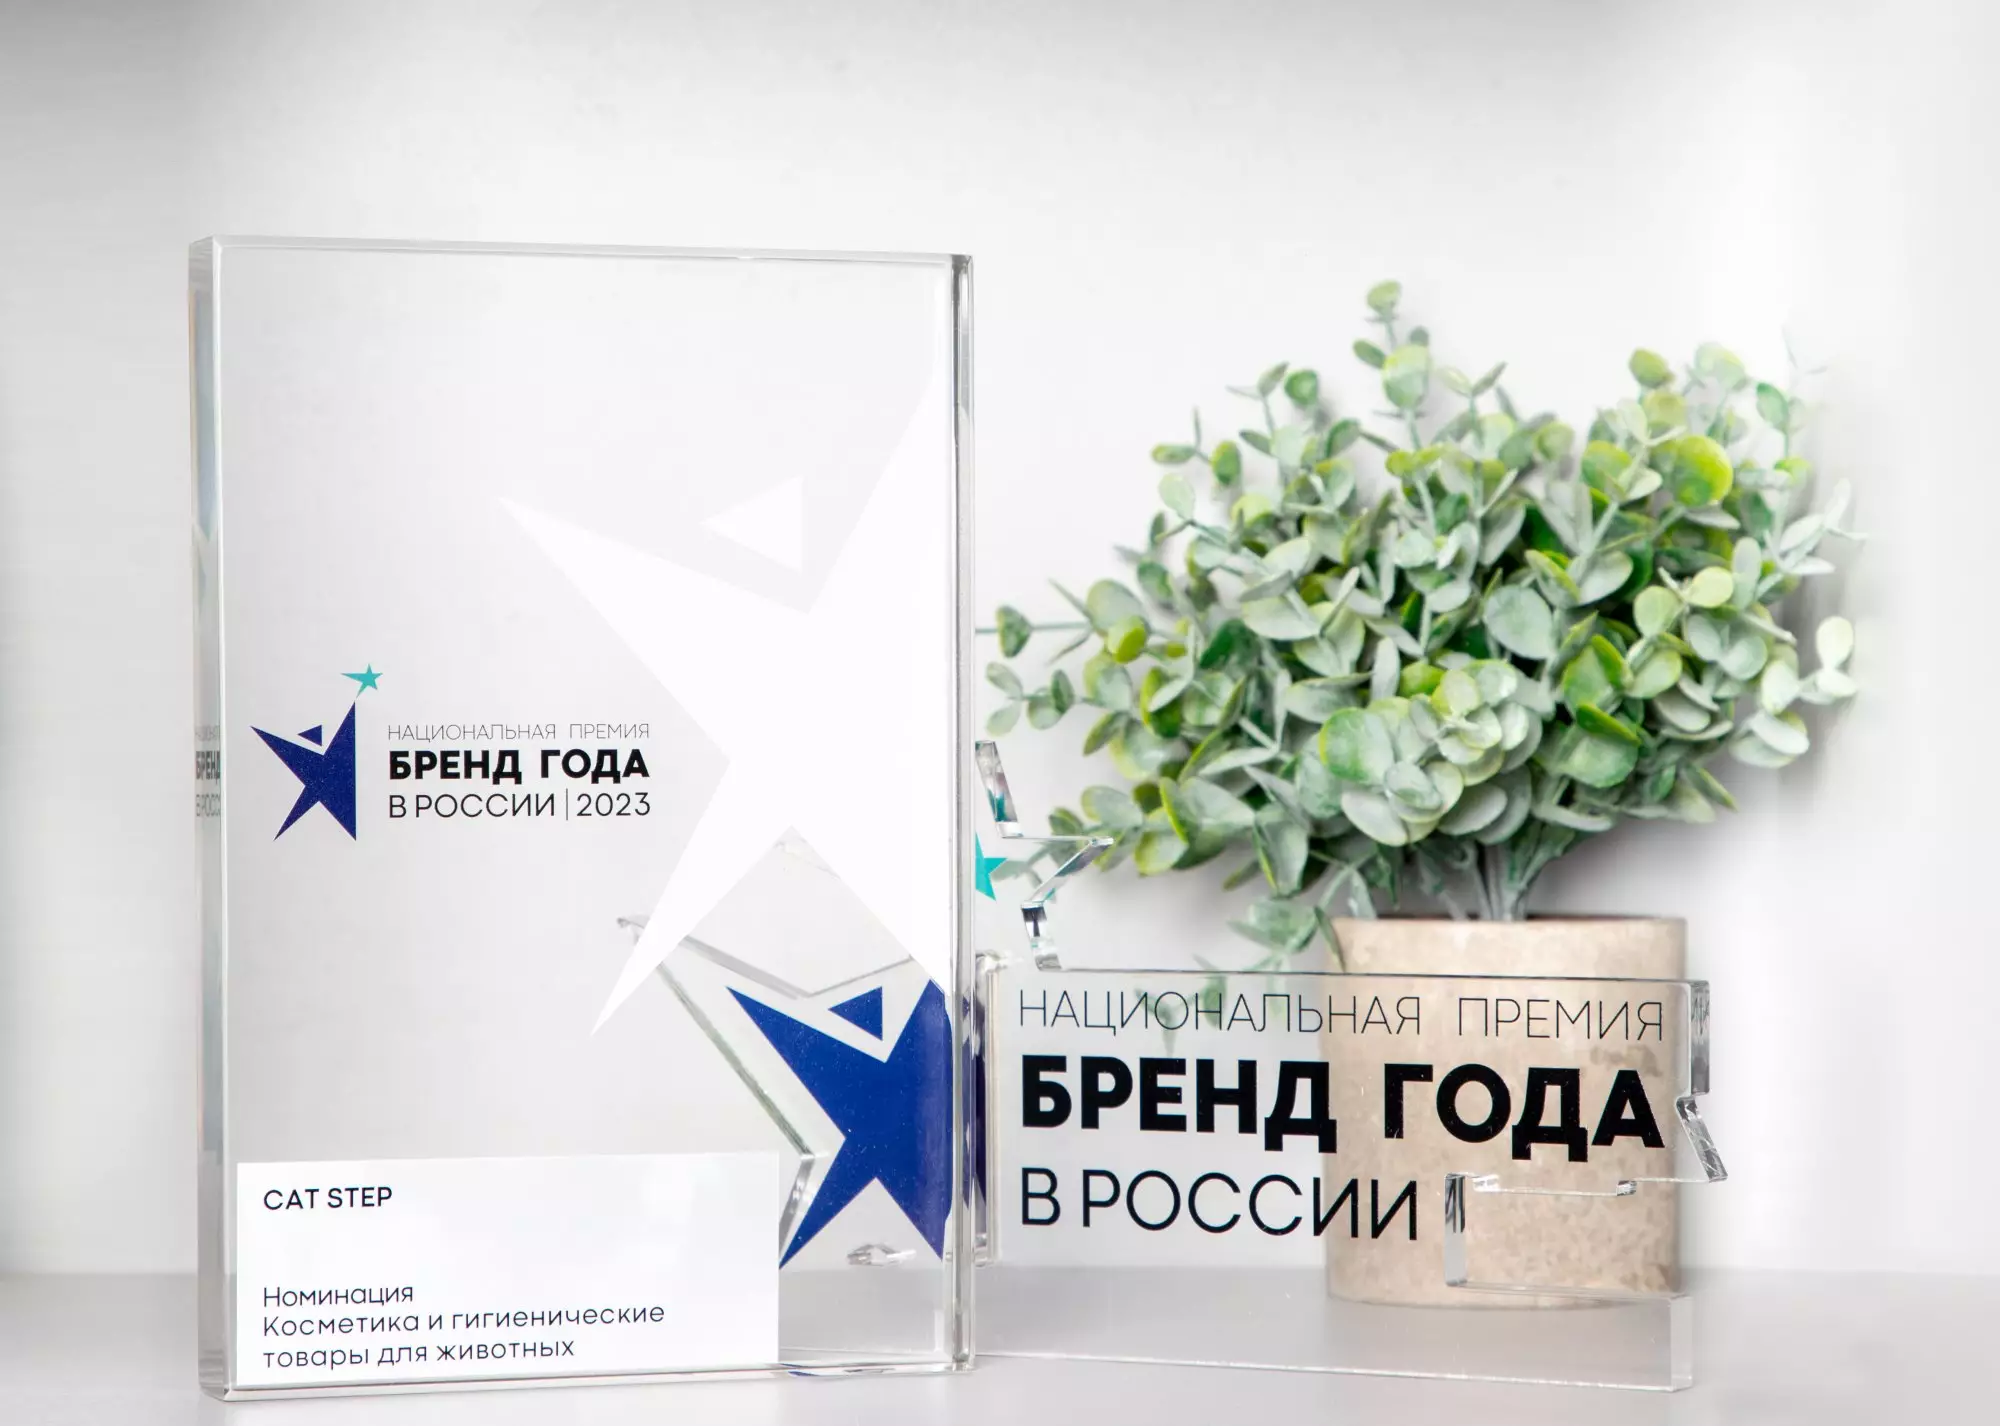 CAT STEP – лауреат Национальной премии «Бренд года в России»!